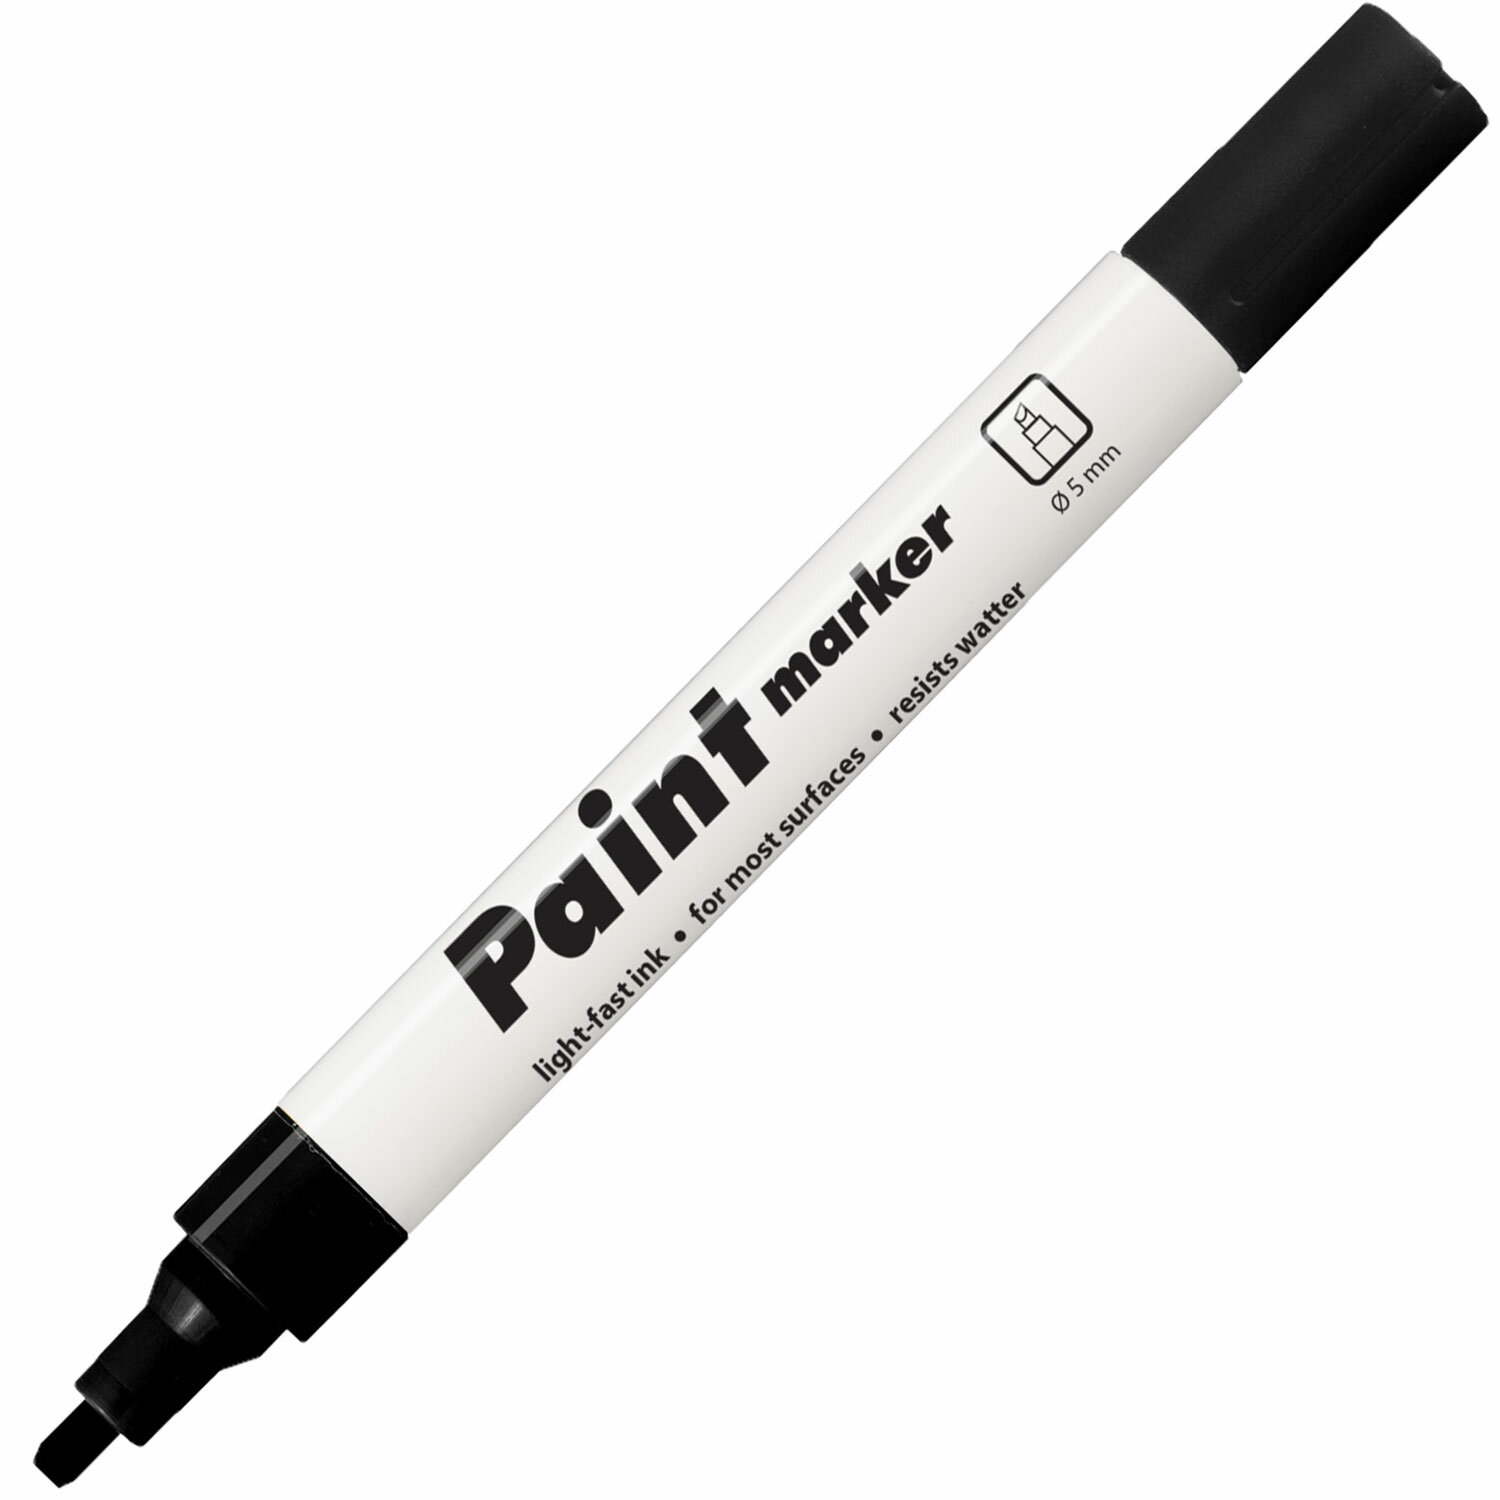 Маркер-краска лаковый (paint marker) ЧЕРНЫЙ CENTROPEN, скошенный наконечник, 1-5 мм, 9100, 5 9100 9912